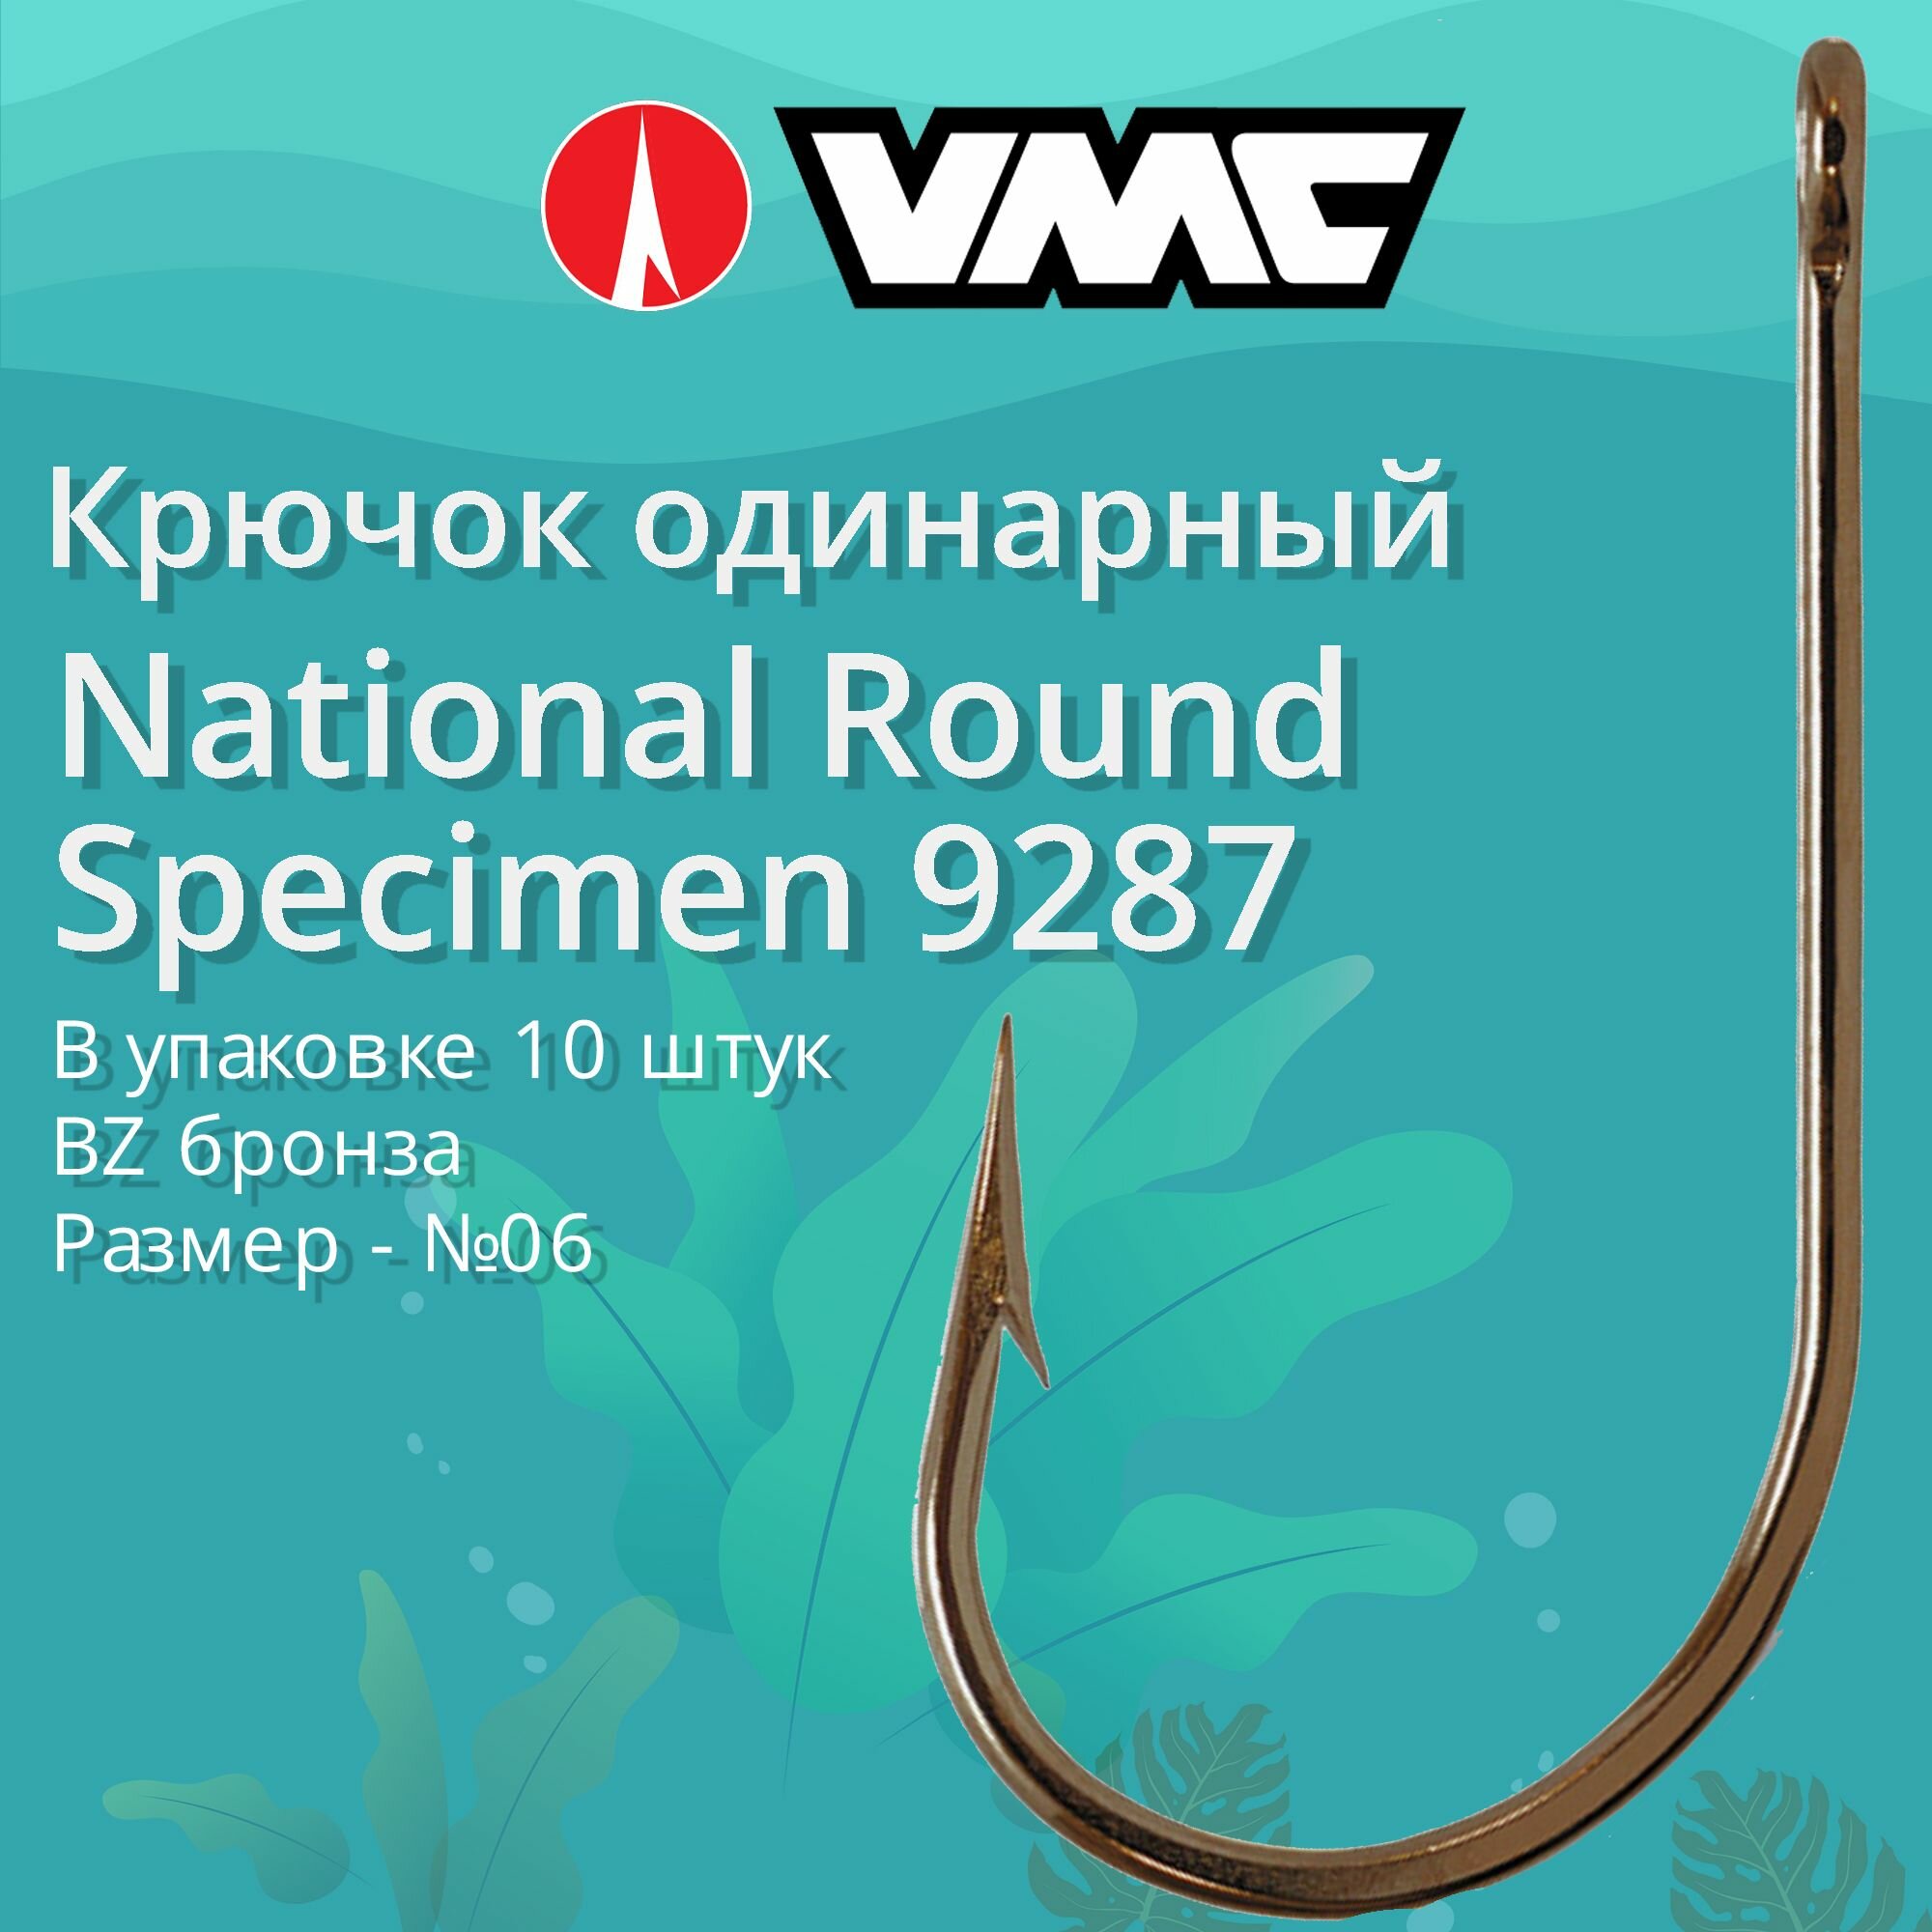 Крючки для рыбалки (одинарный) VMC National Round Specimen 9287 BZ (бронза) №06 упаковка 10 штук